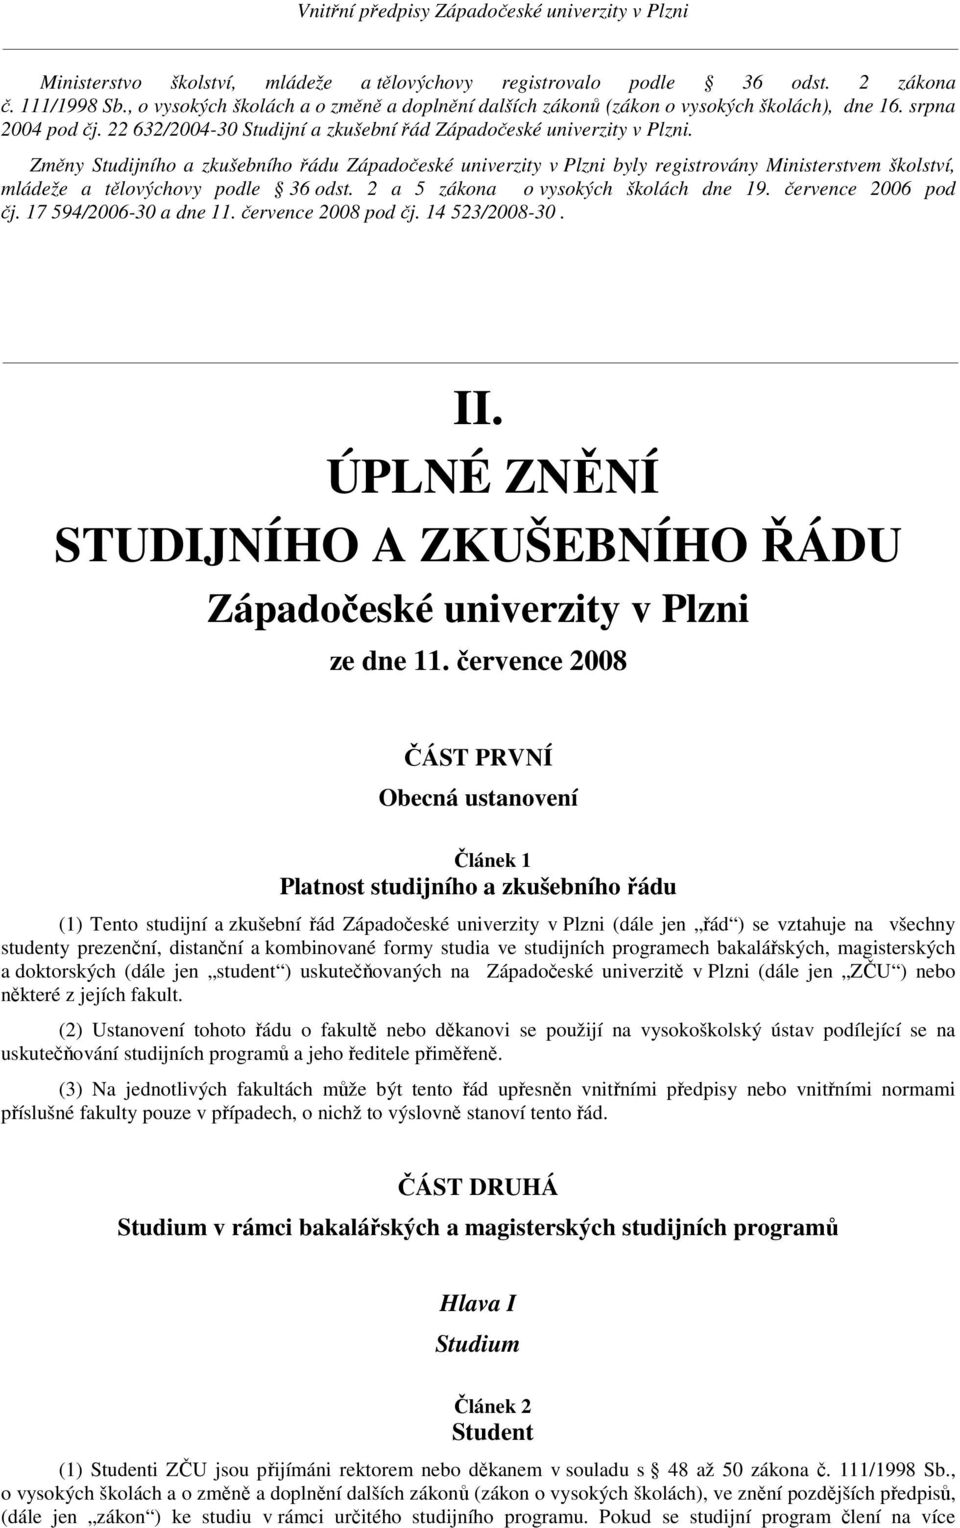 Změny Studijního a zkušebního řádu Západočeské univerzity v Plzni byly registrovány Ministerstvem školství, mládeže a tělovýchovy podle 36 odst. 2 a 5 zákona o vysokých školách dne 19.